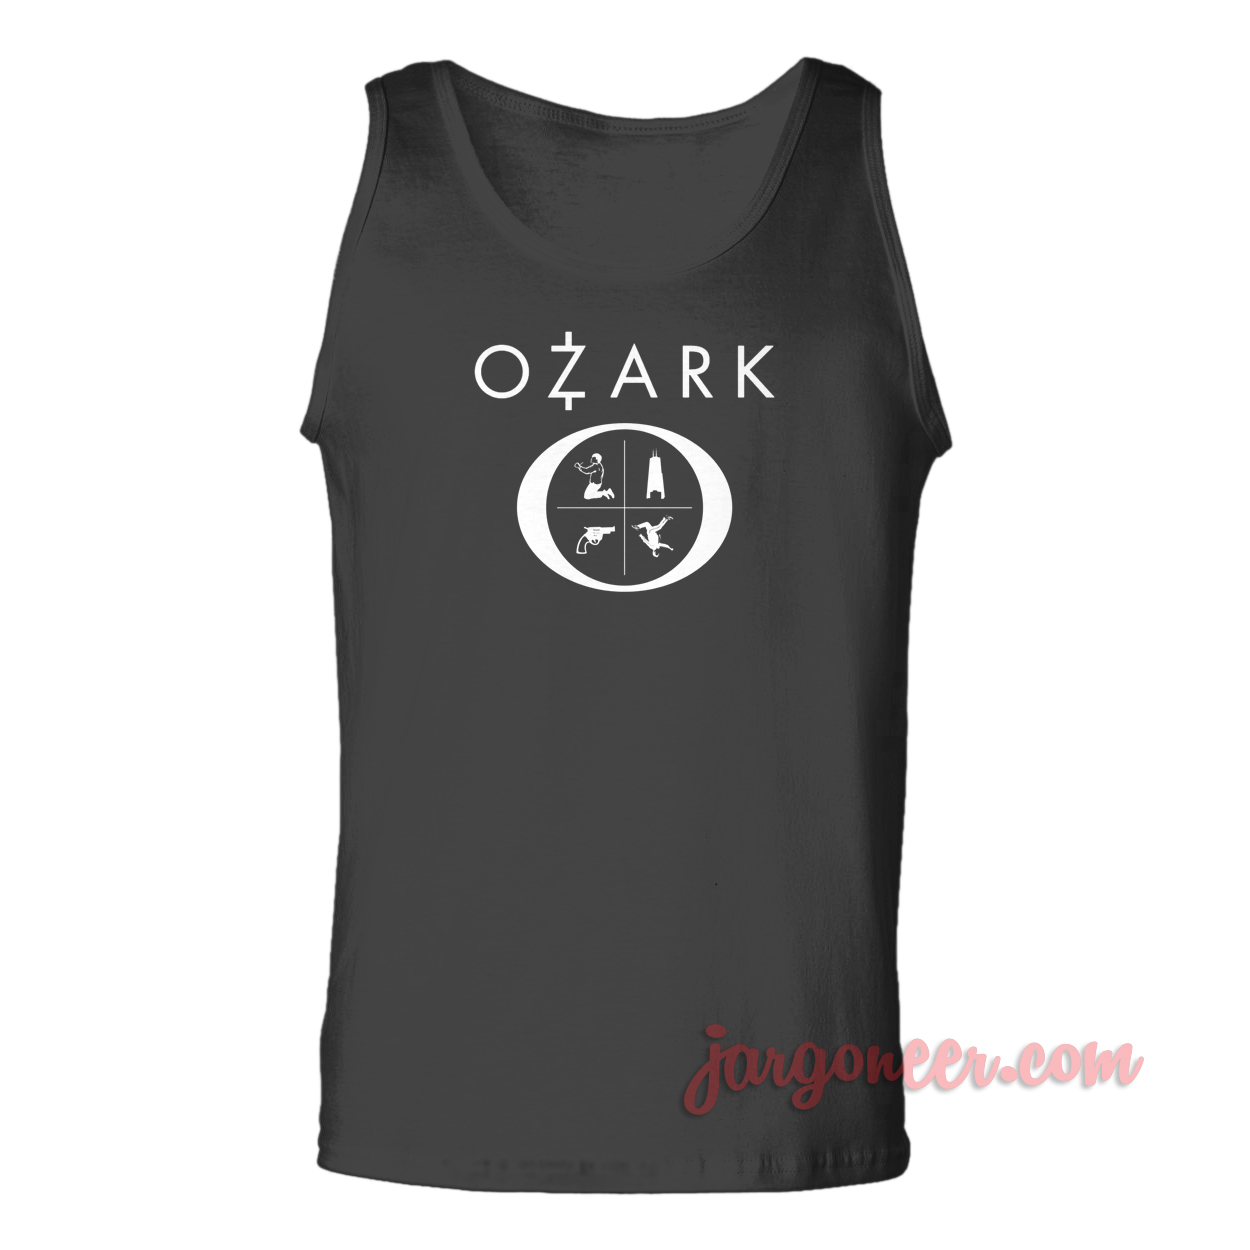 Ozark Series - Shop Unique Graphic Cool Shirt Designs